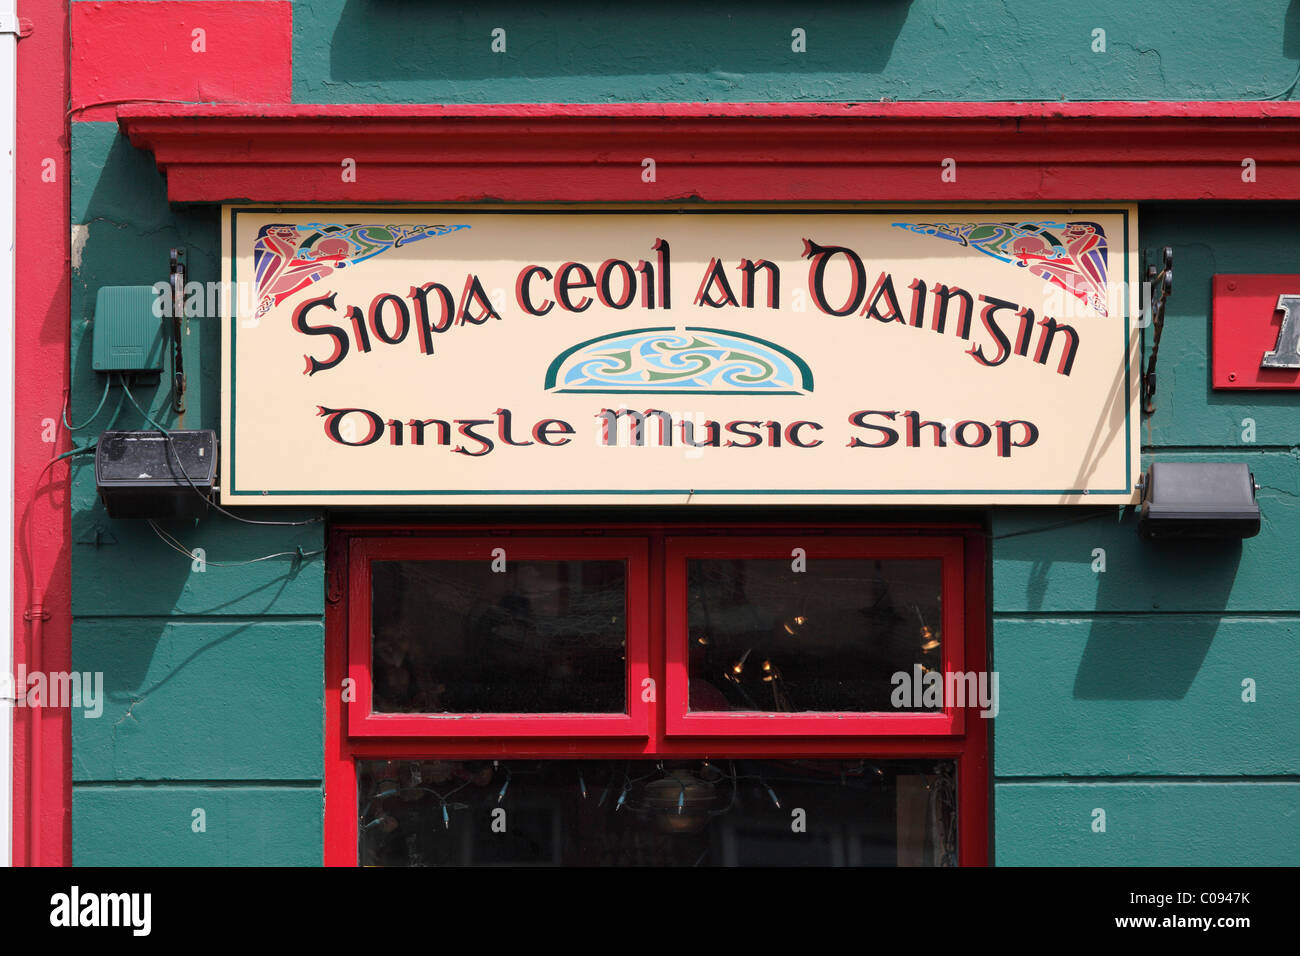 Dingle Music shop, sign in irlandese e inglese, Dingle, nella contea di Kerry, Irlanda Isole britanniche, Europa Foto Stock